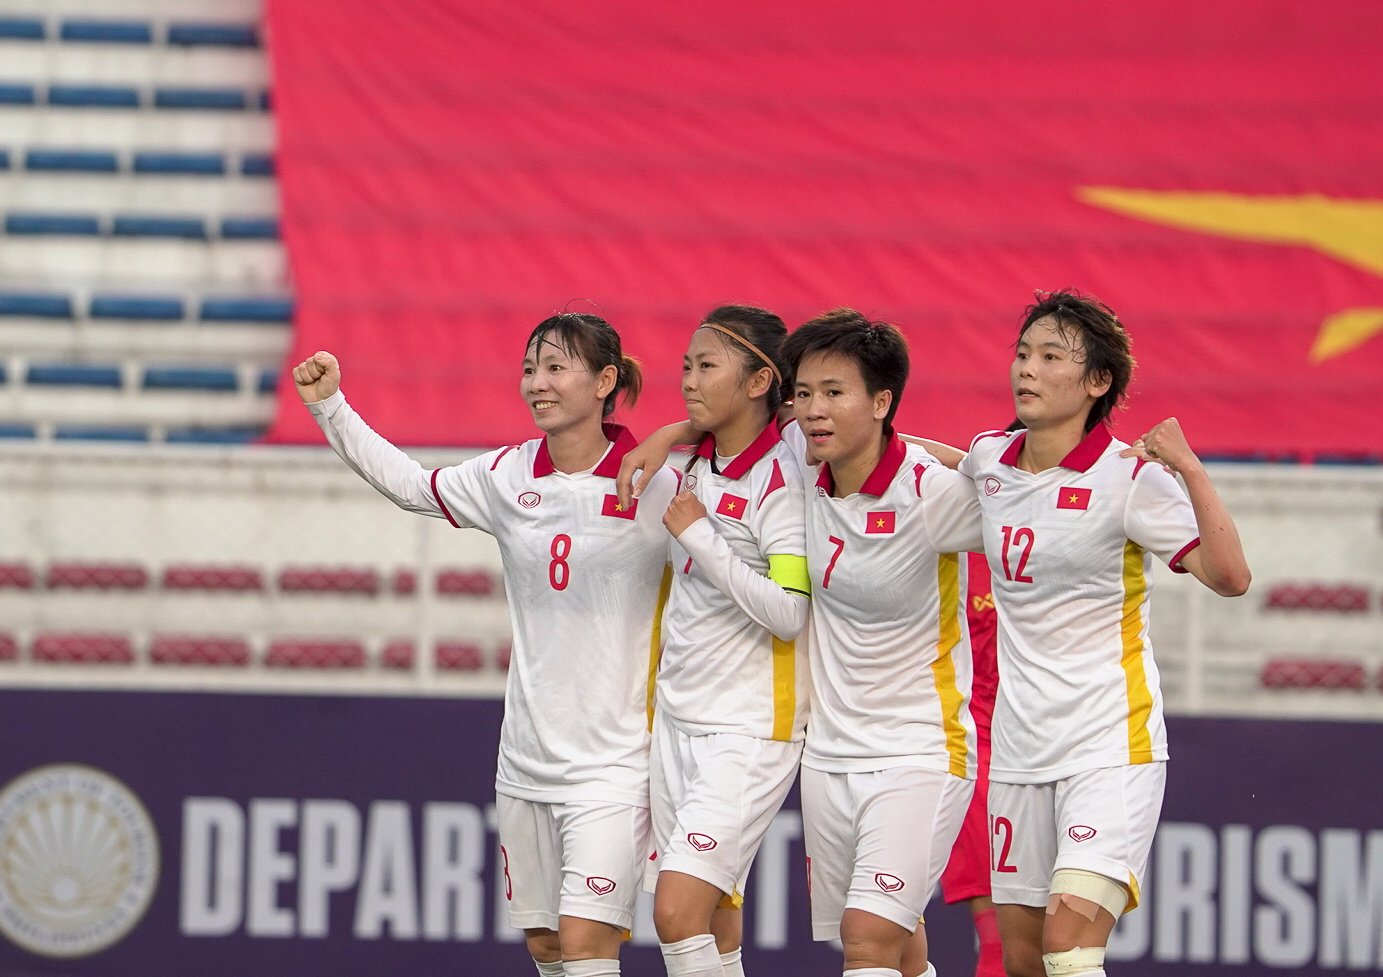 ĐT nữ Việt Nam sử dụng cầu thủ Việt kiều tại VCK World Cup 2023? - Ảnh 1.